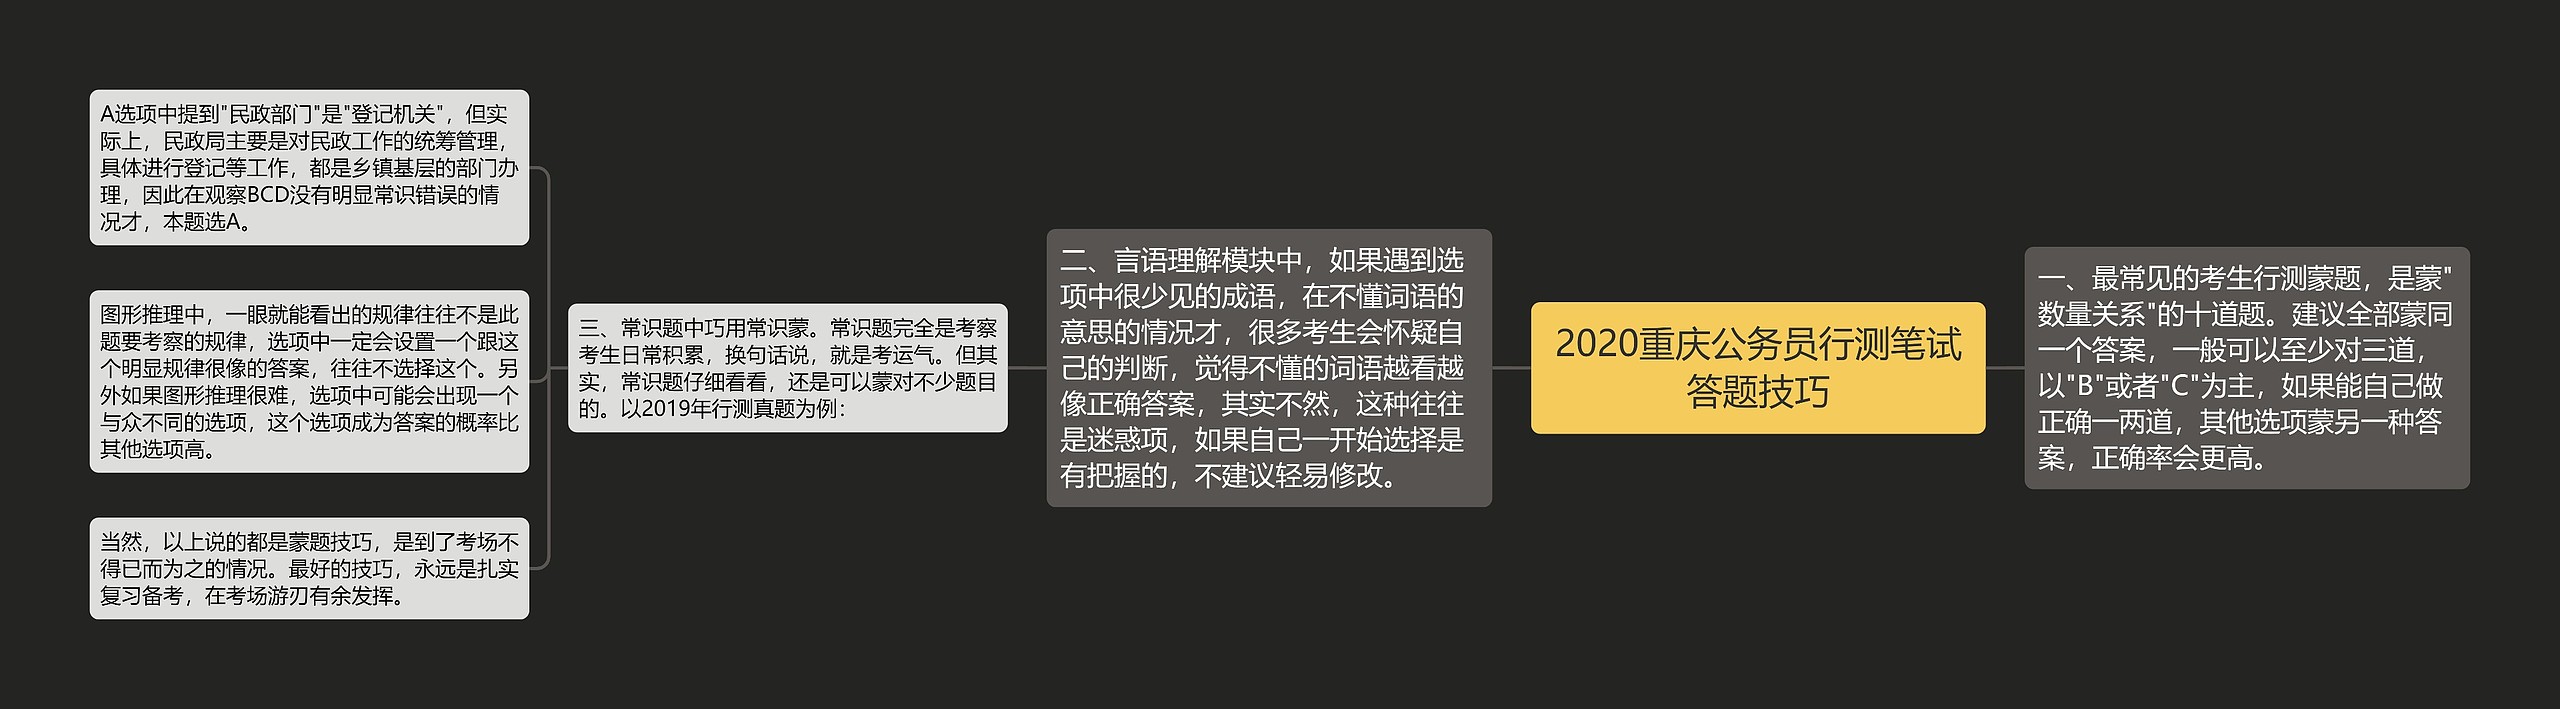 2020重庆公务员行测笔试答题技巧